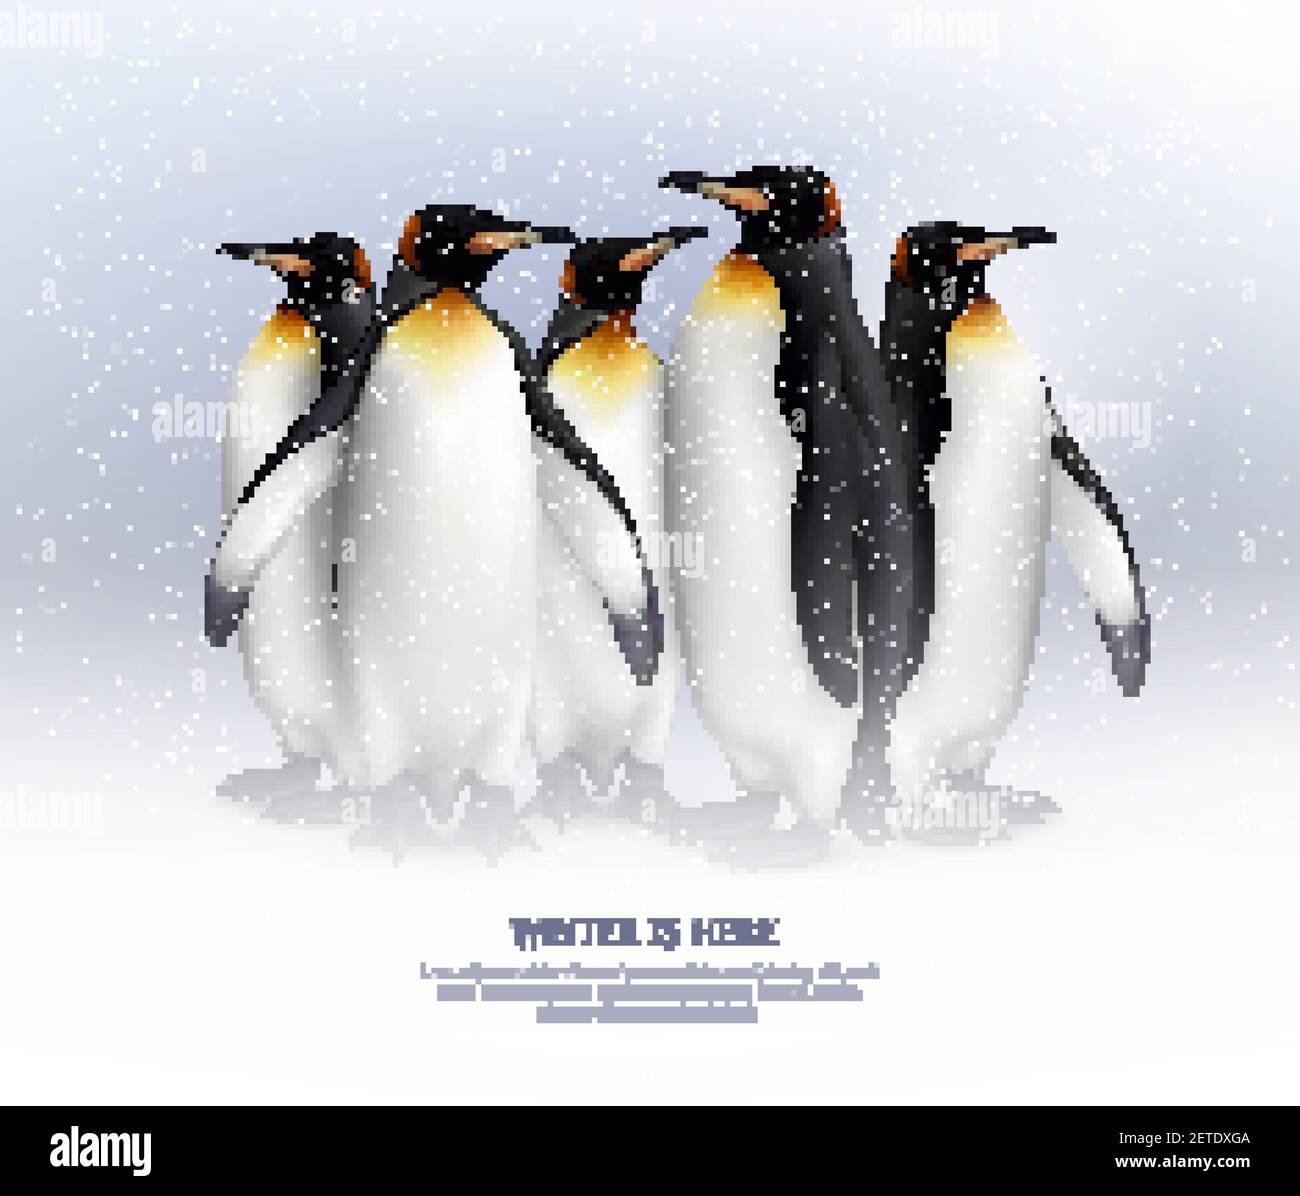 Colonie de pingouins de roi dans un environnement neigeux composition réaliste fond poster pour de grandes idées de vacances d'hiver illustration vectorielle Illustration de Vecteur